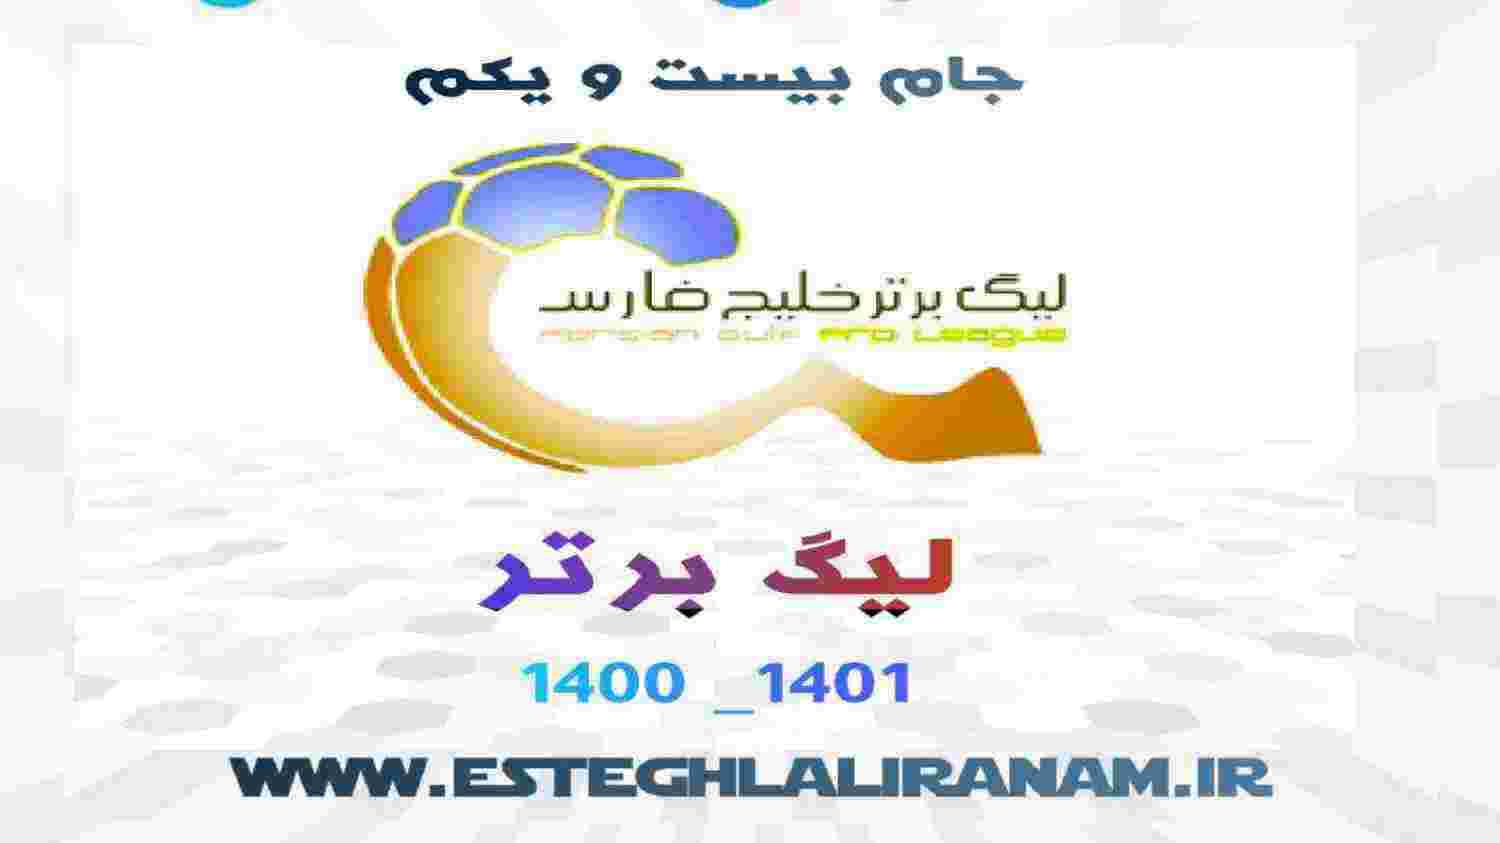 روز اول از مسابقات هفته اول لیگ برتر  27 مهر 1400 